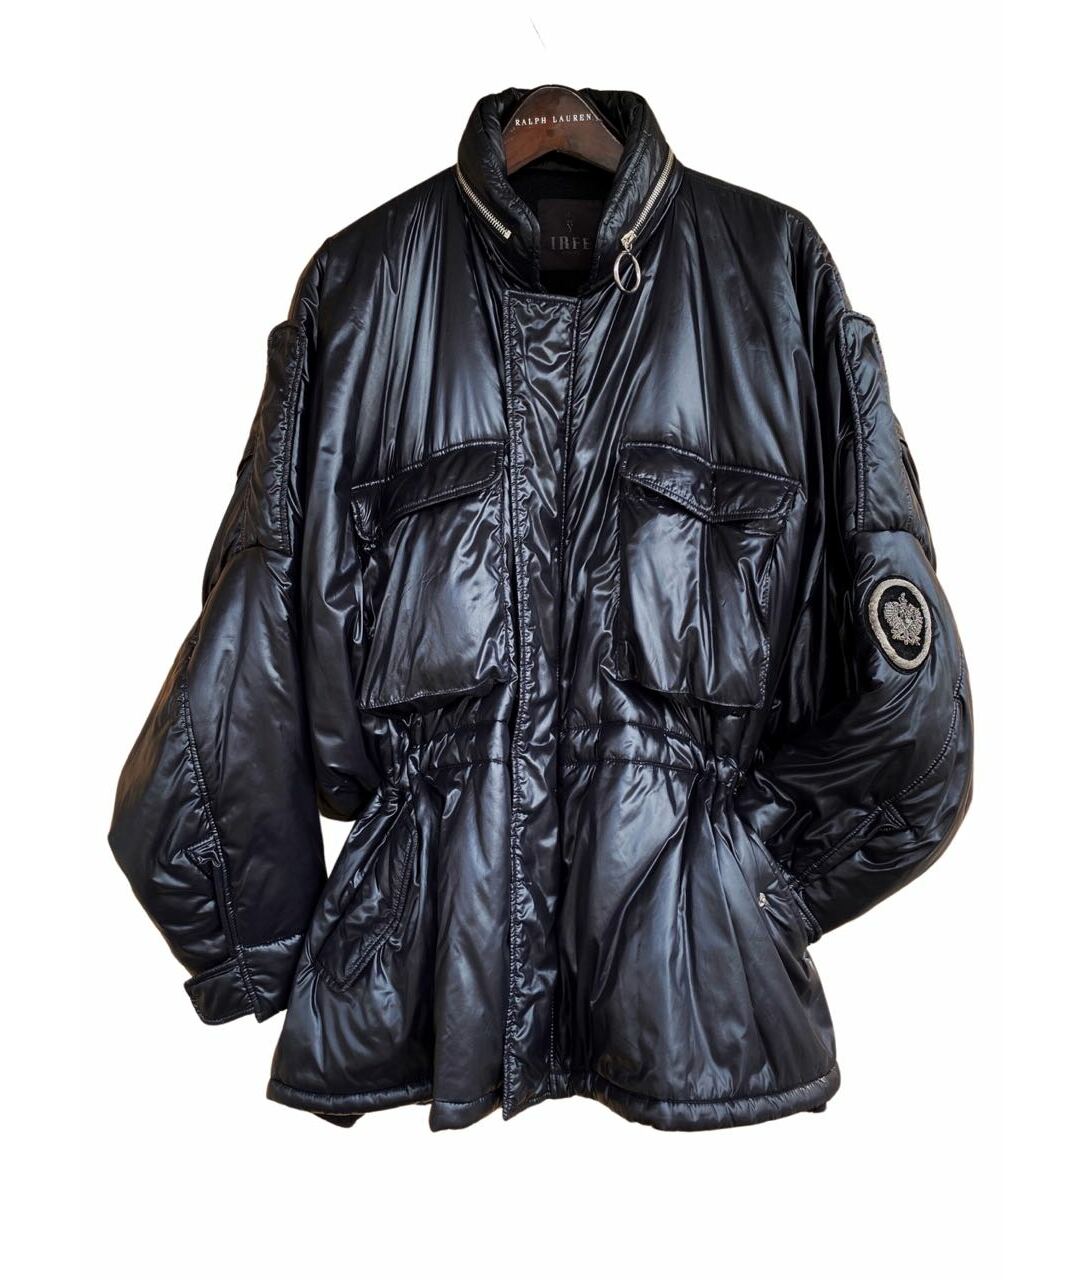 IRFE Черная полиамидовая куртка, фото 1